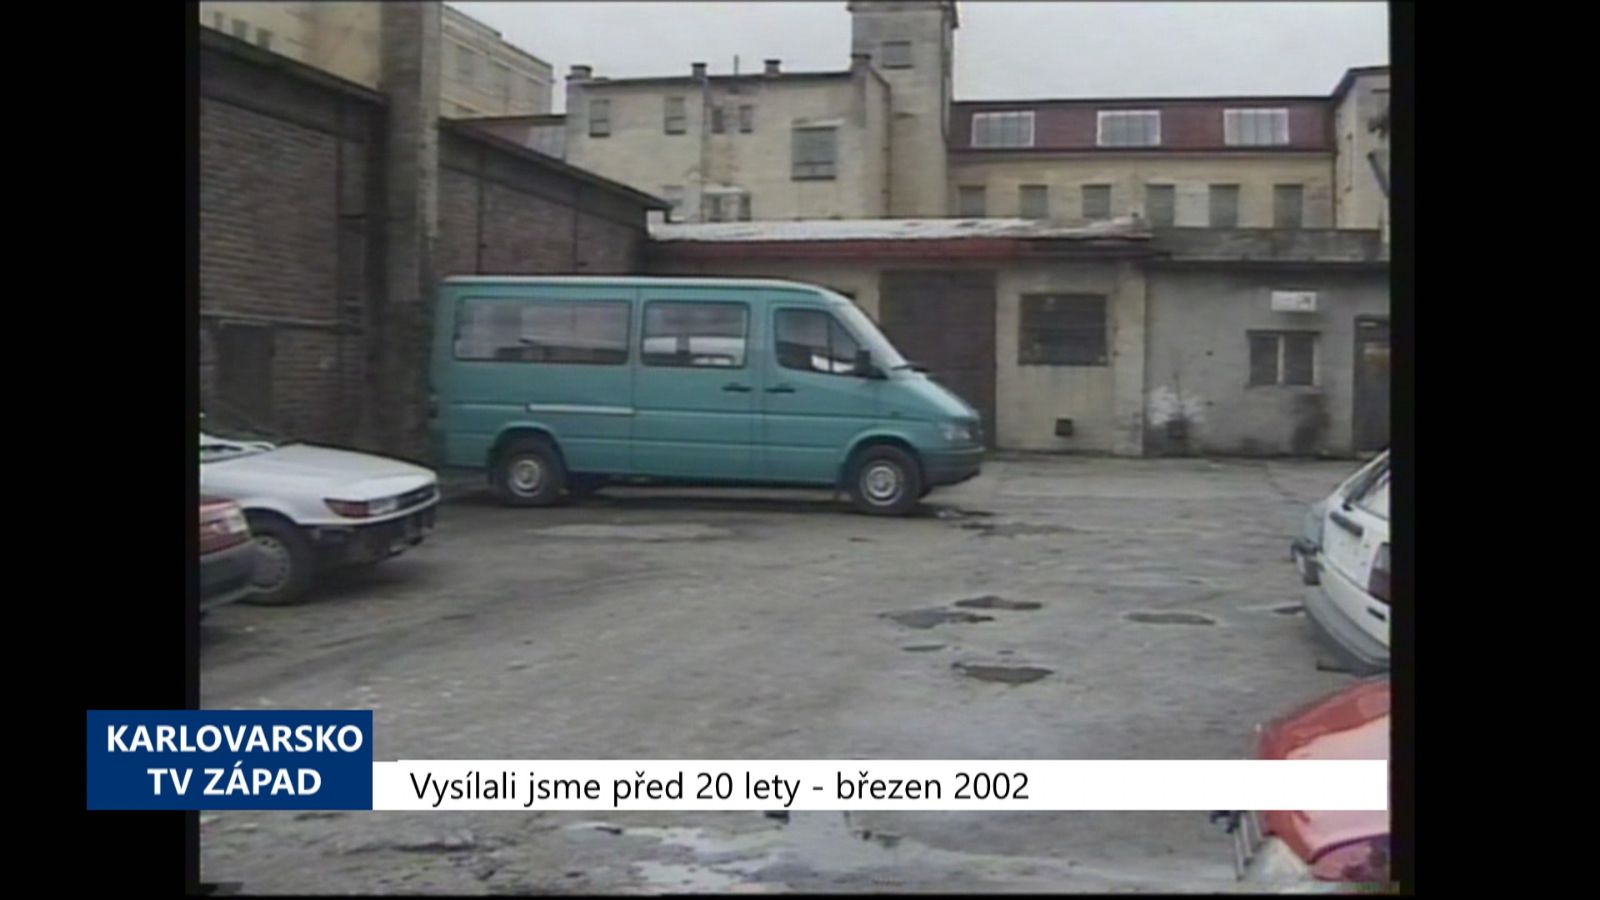 2002 – Cheb: Pes přinesl do areálu mrtvolku dítěte (TV Západ)